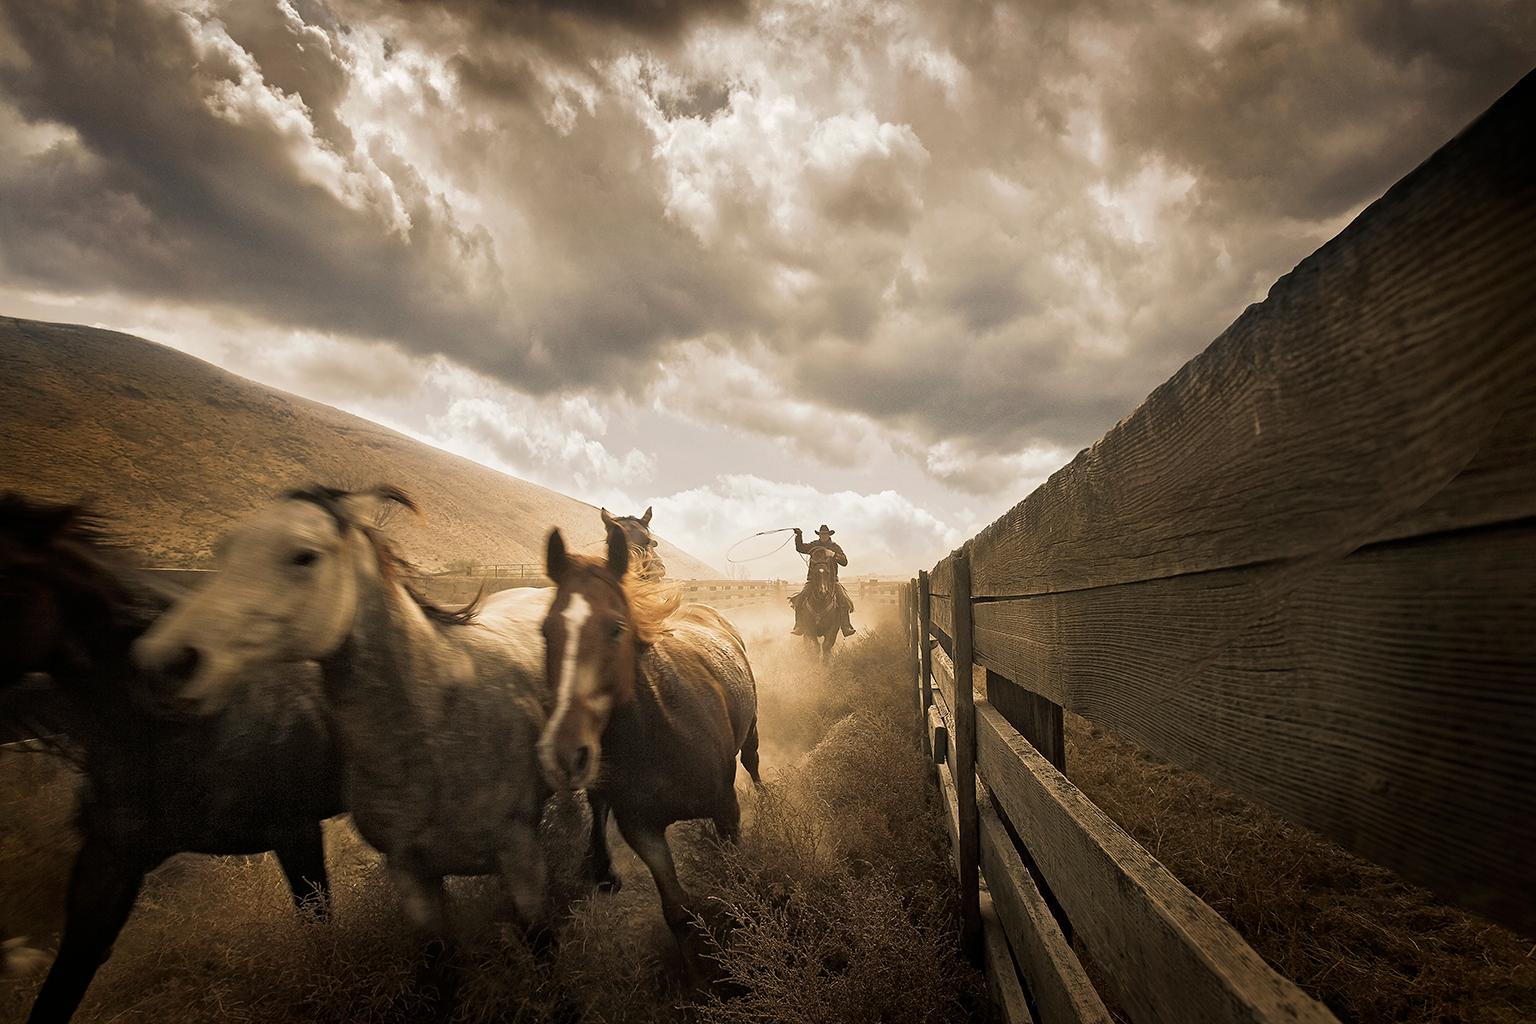 Cowboys Nr. 2, Wala Wala, Washington 2007. Auflage von 7.

Chris Gordaneer ist einer der leidenschaftlichsten Fotografen unserer Zeit. Seine Fotografie bewegt sich an der Schnittstelle zwischen Schönheit und Perfektion.